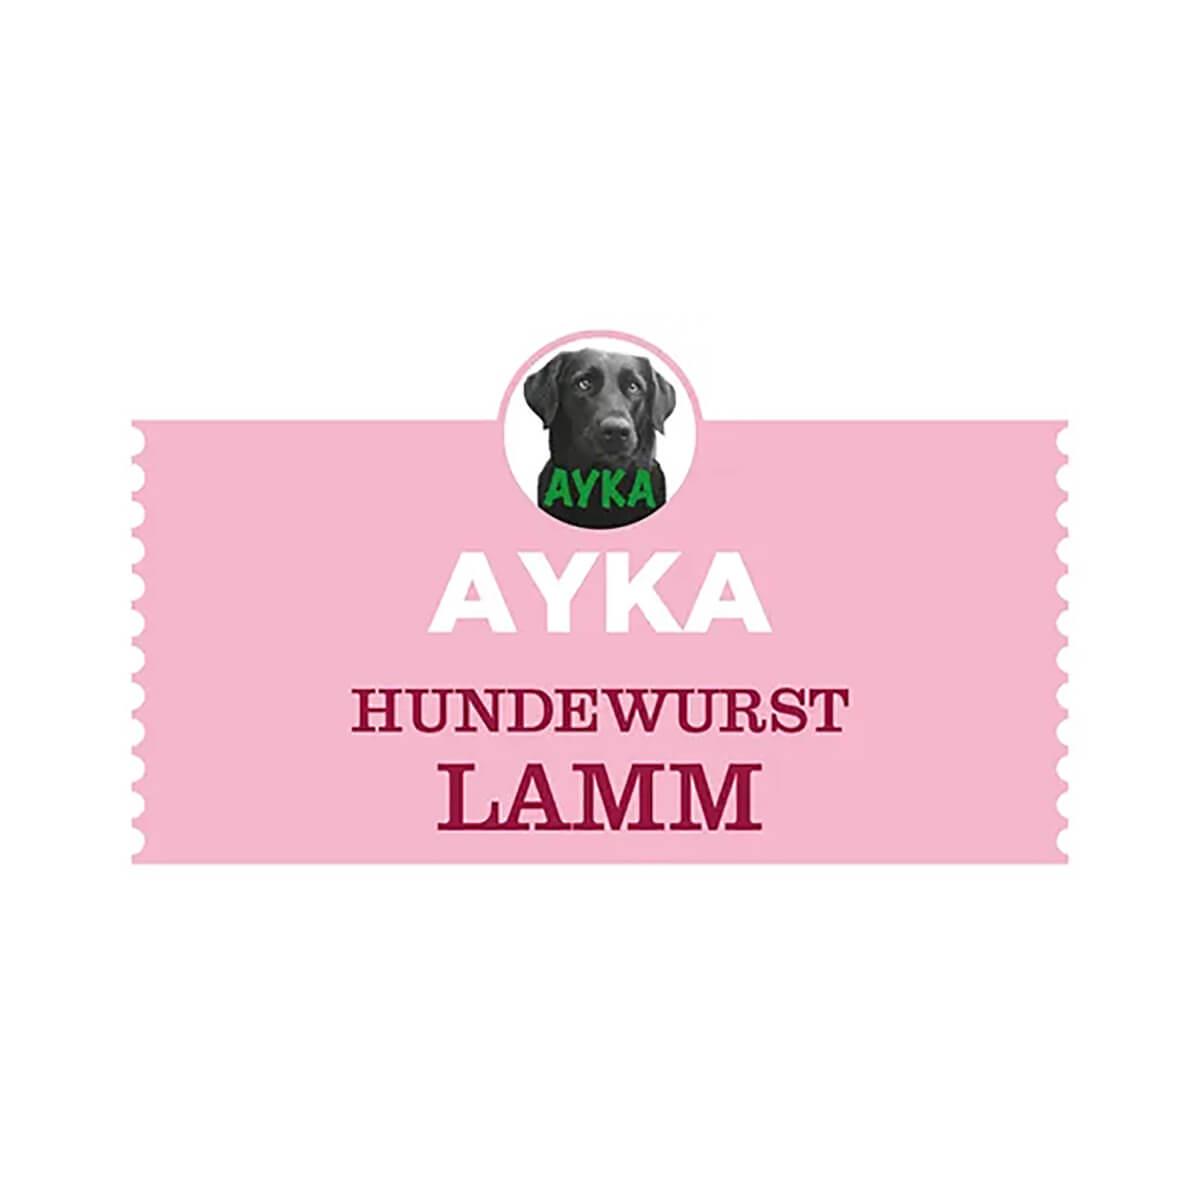 Ayka Lammasmakkara sopii koulutusnamiksi myös useimmille herkkävatsaisille koirille.